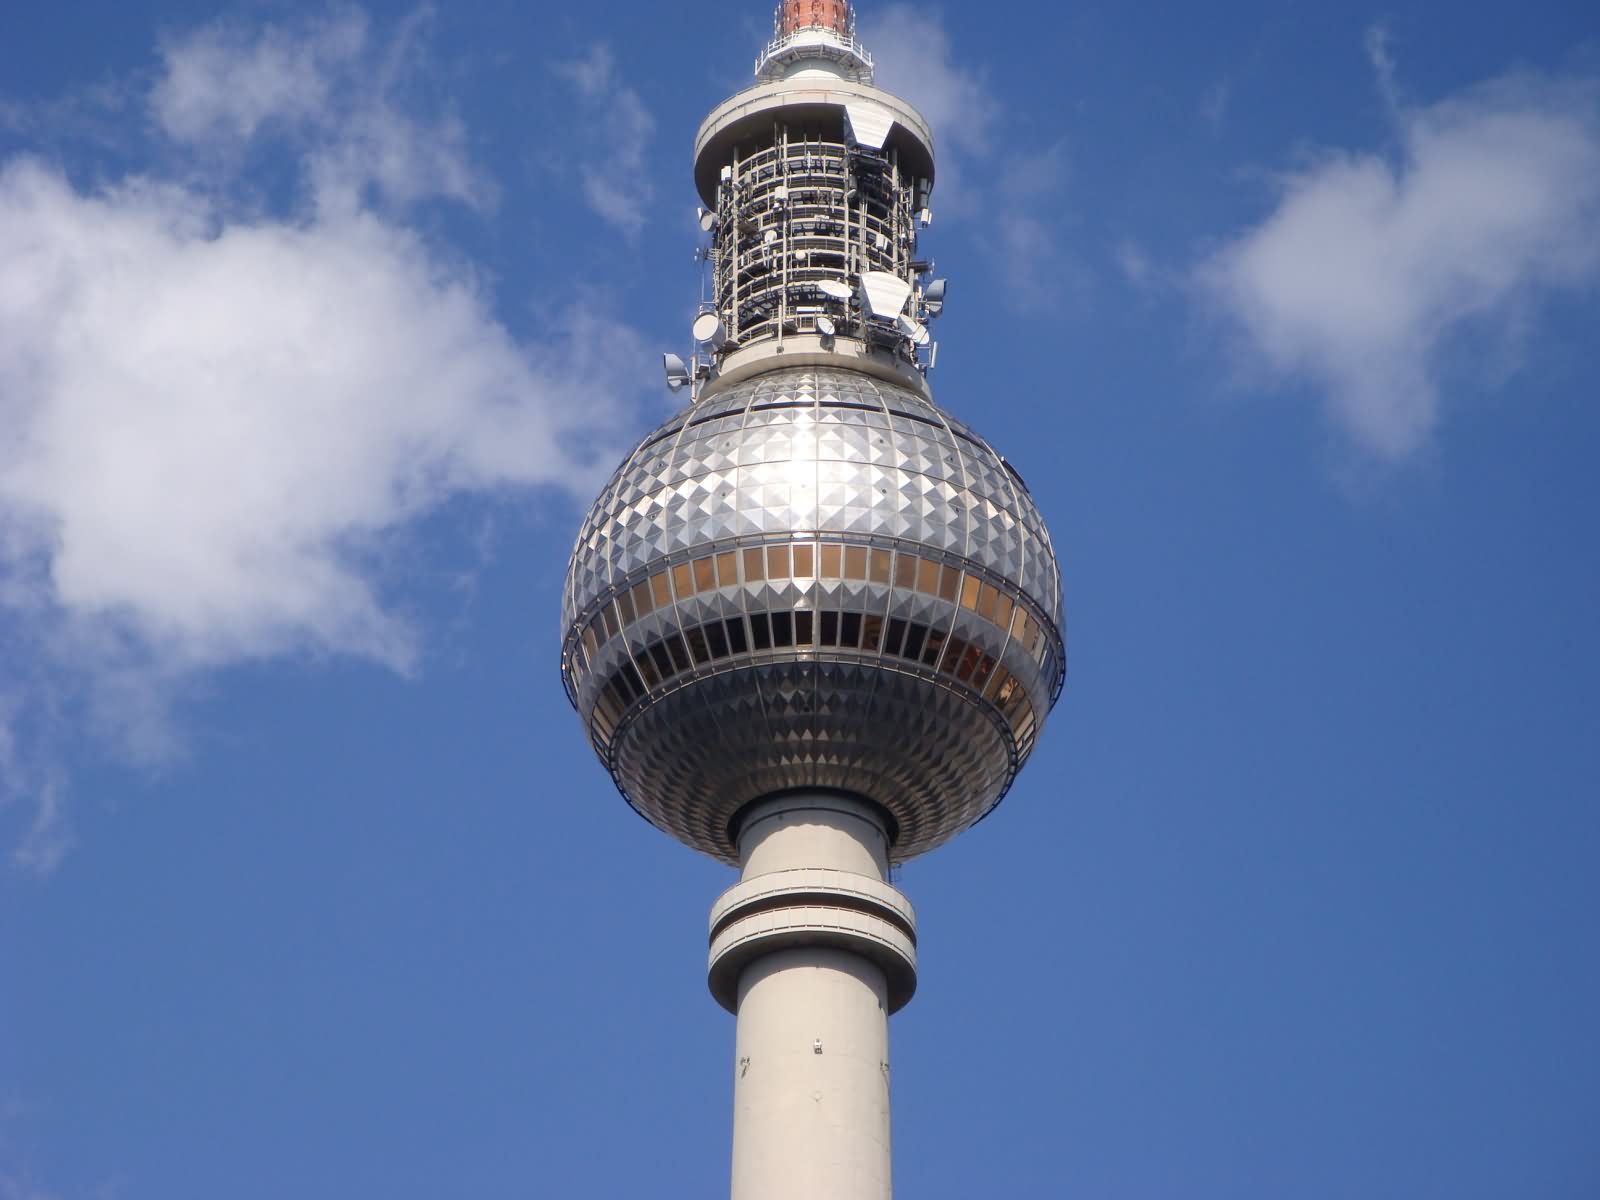 Fernsehturm Berlin Tower Closeup Picture